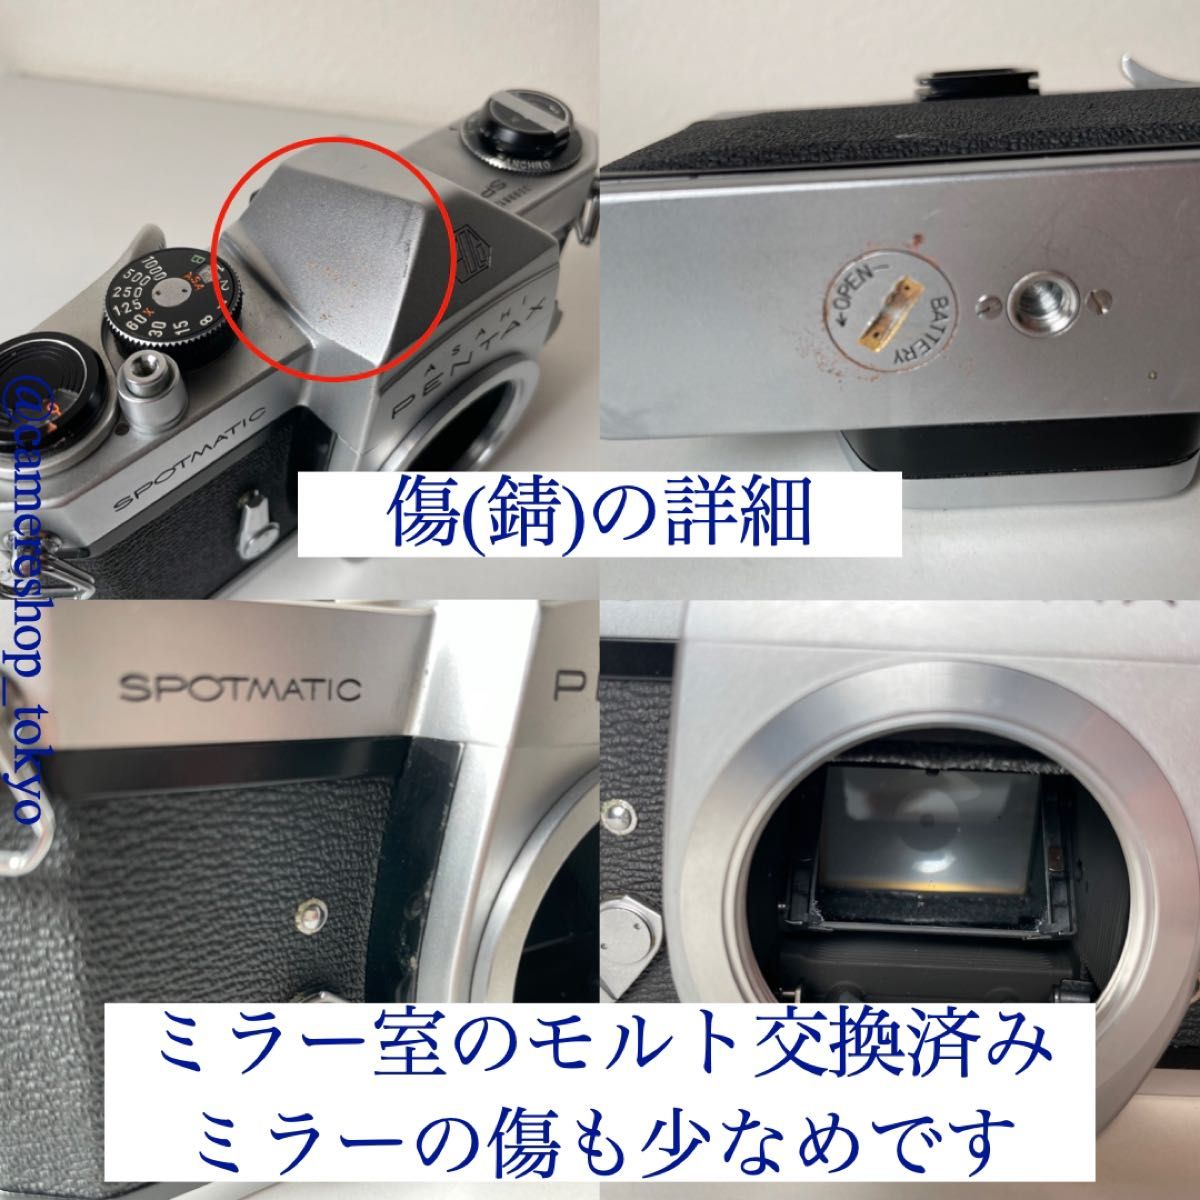 【大人気】PENTAX SP(オーバーホール品) 一眼レフカメラ フィルムカメラ